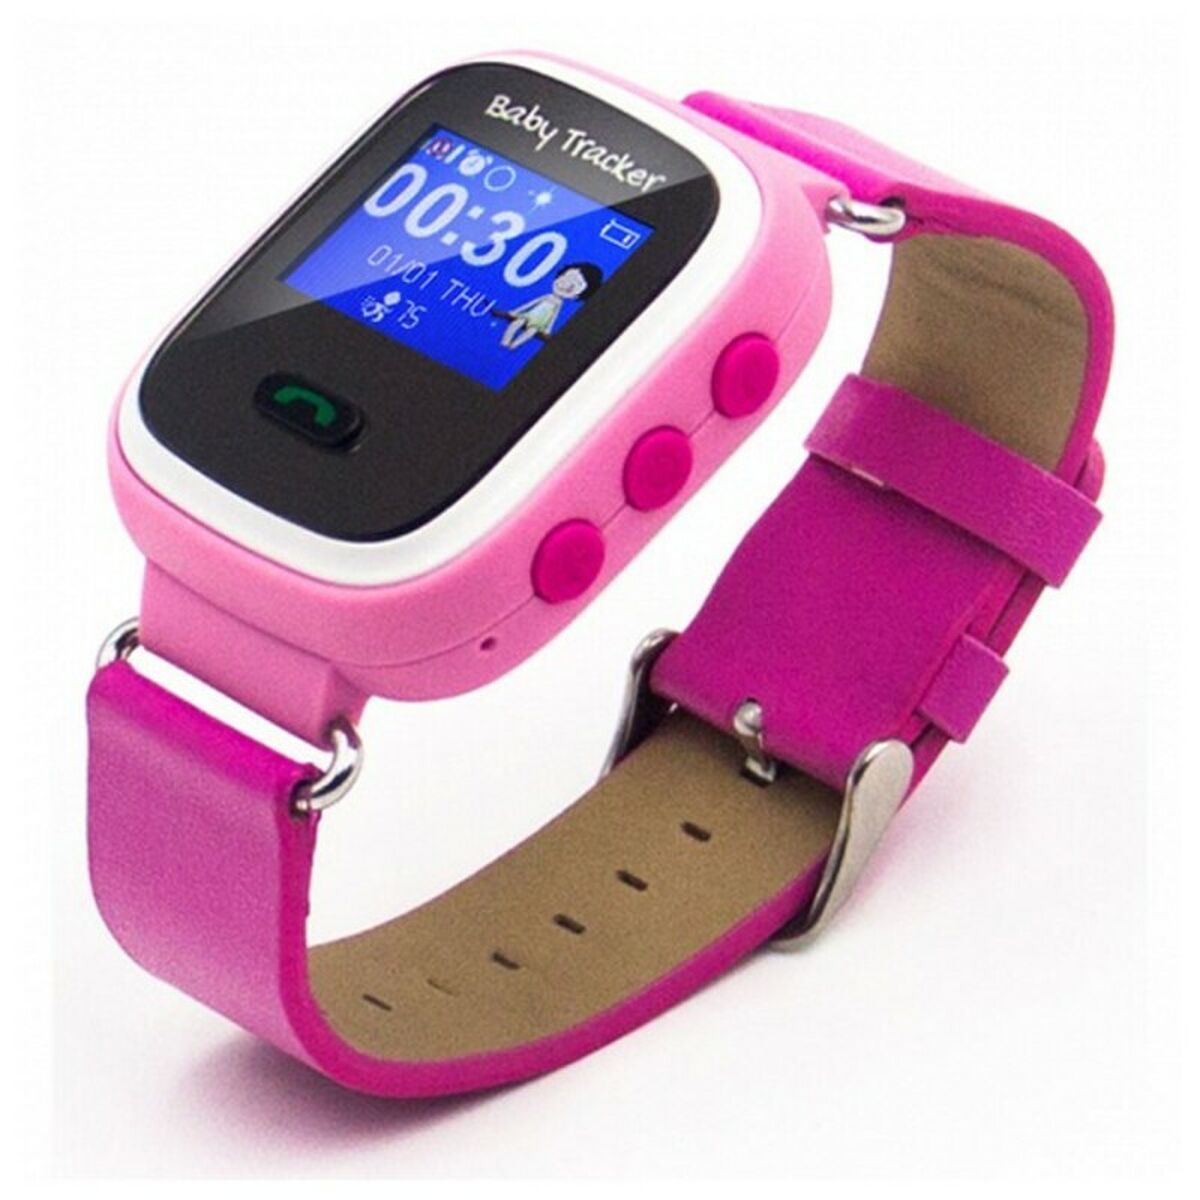 Kids' Smartwatch Overnis D221915 GPS GSM Tracking USB 5 V Pink